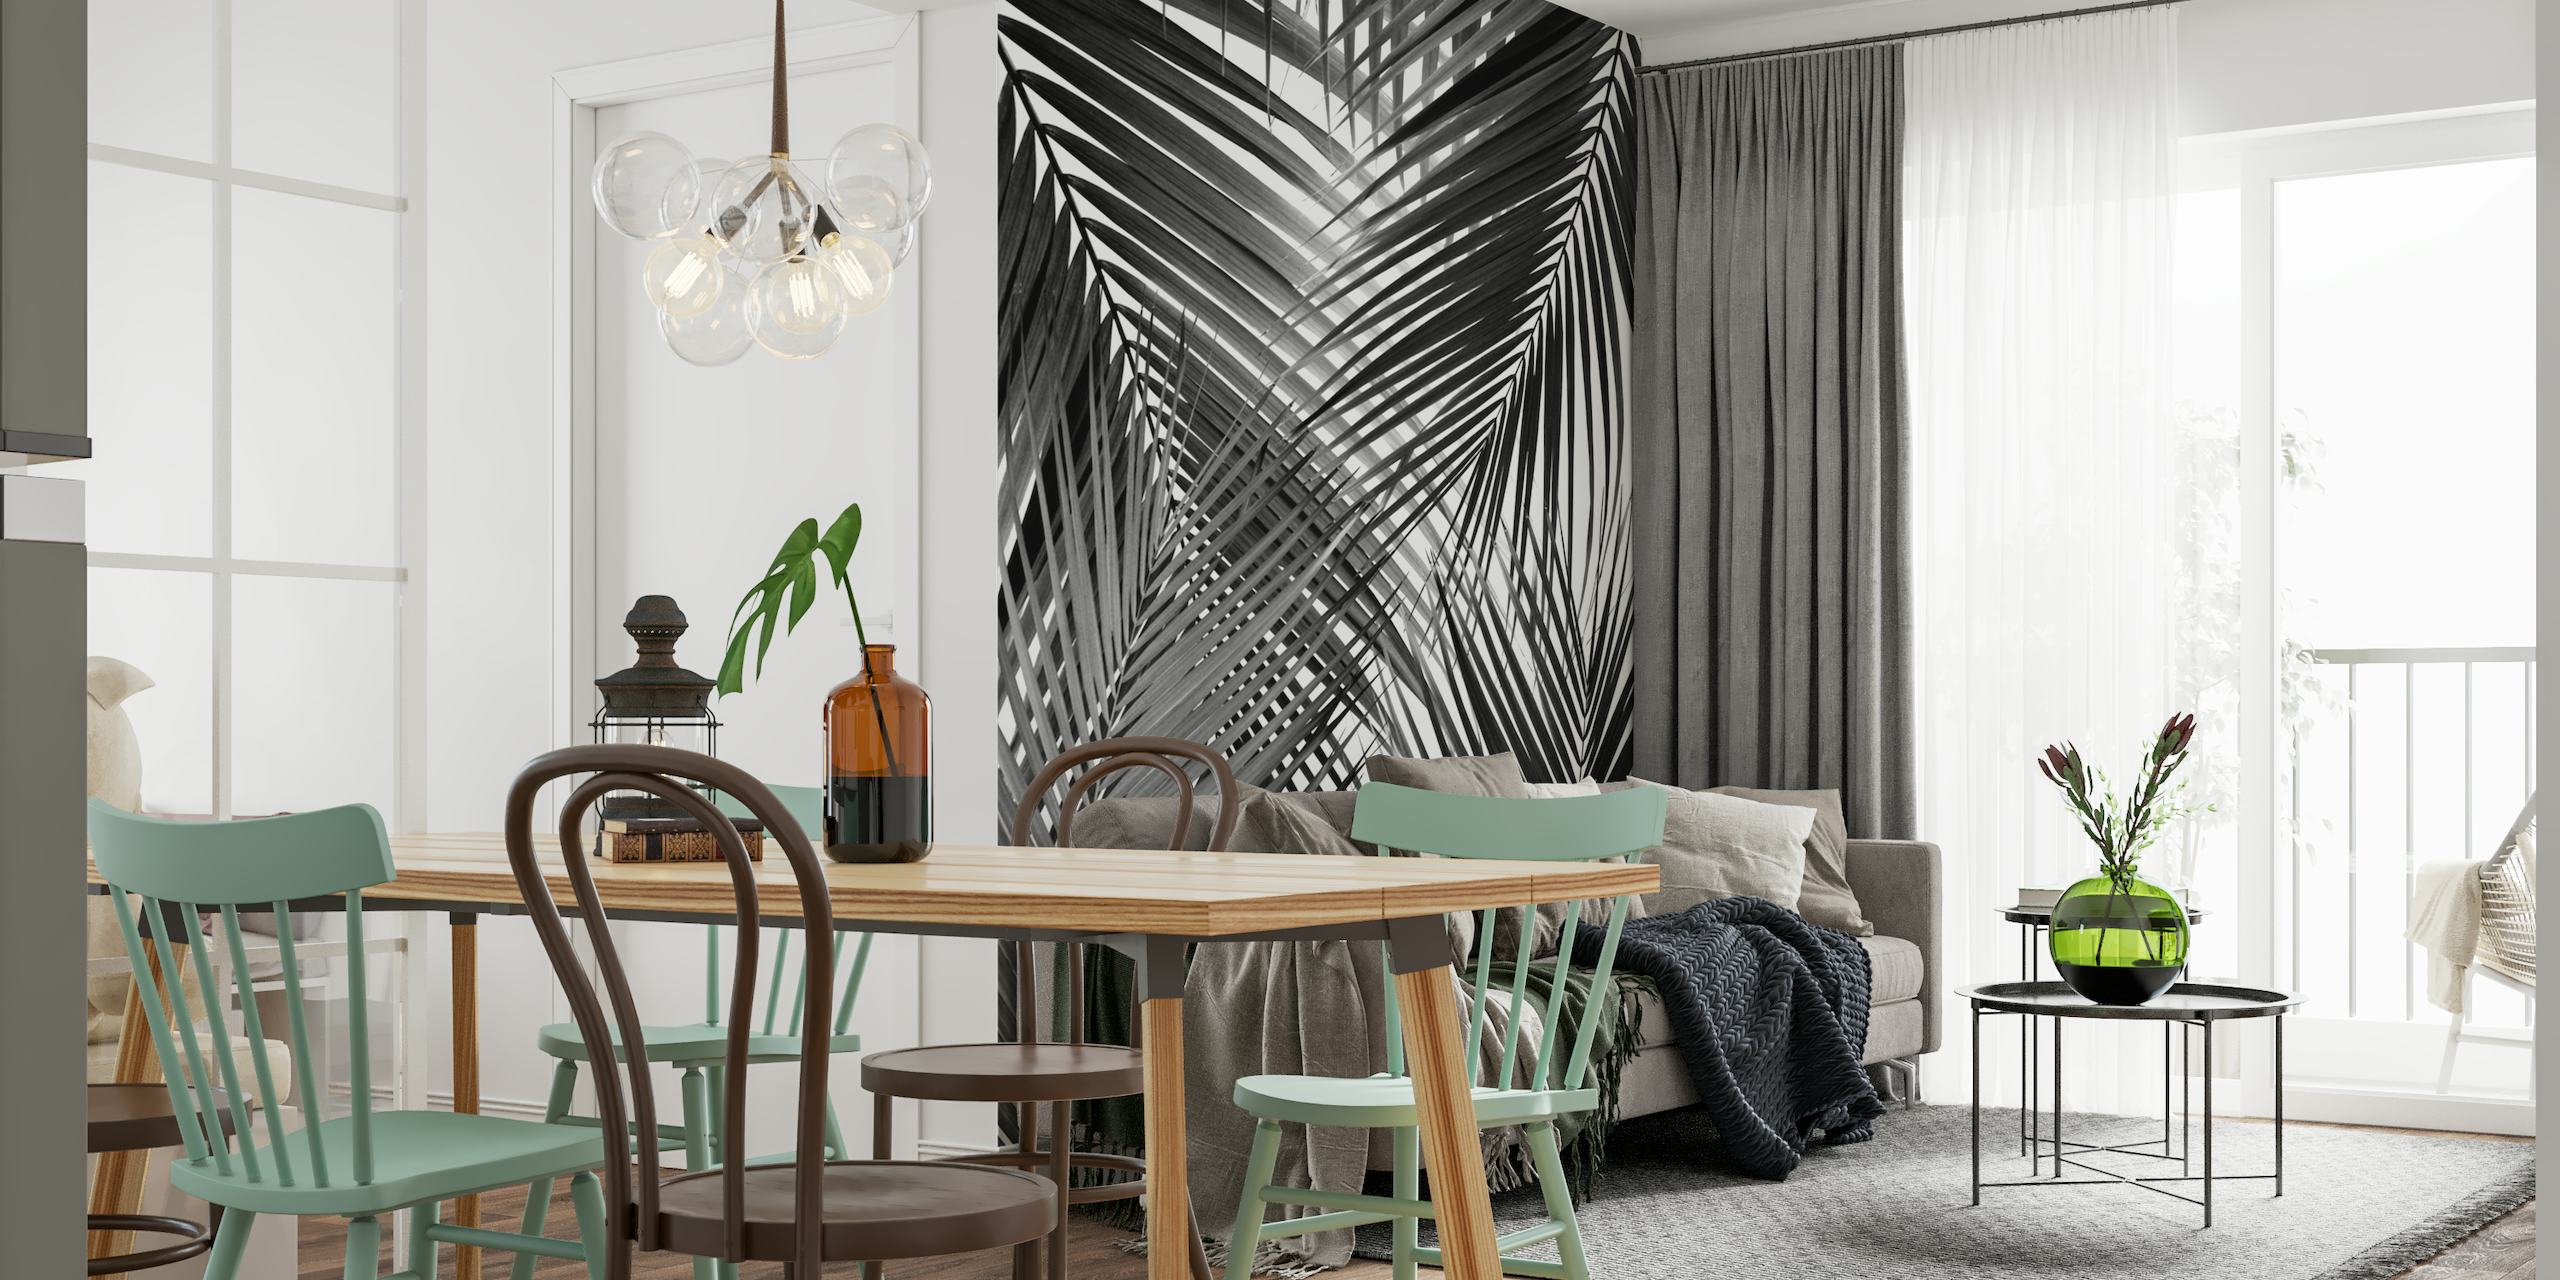 Murale in bianco e nero dal design astratto di foglie di palma